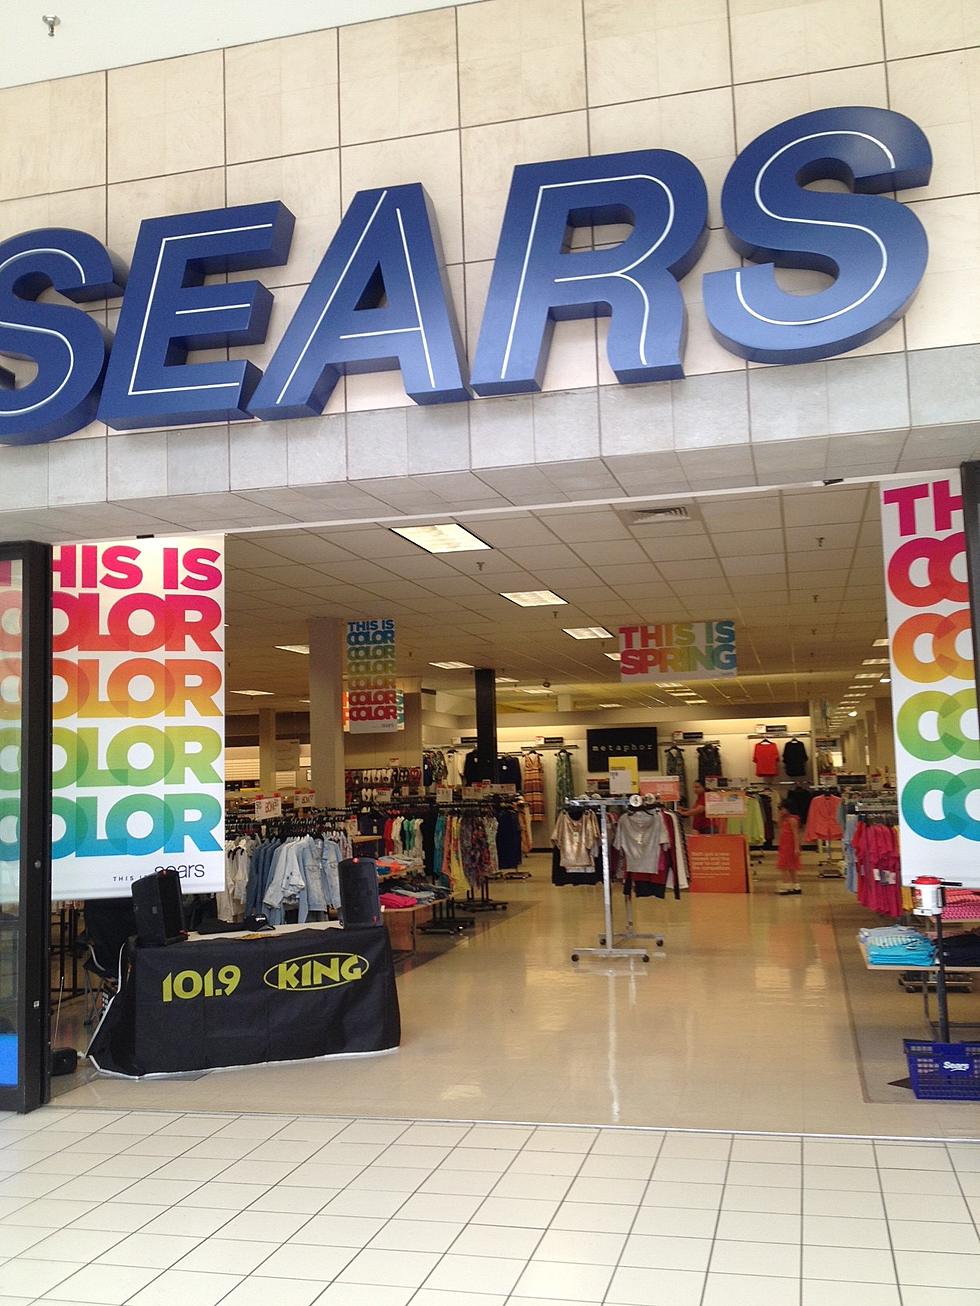 Sears Closing